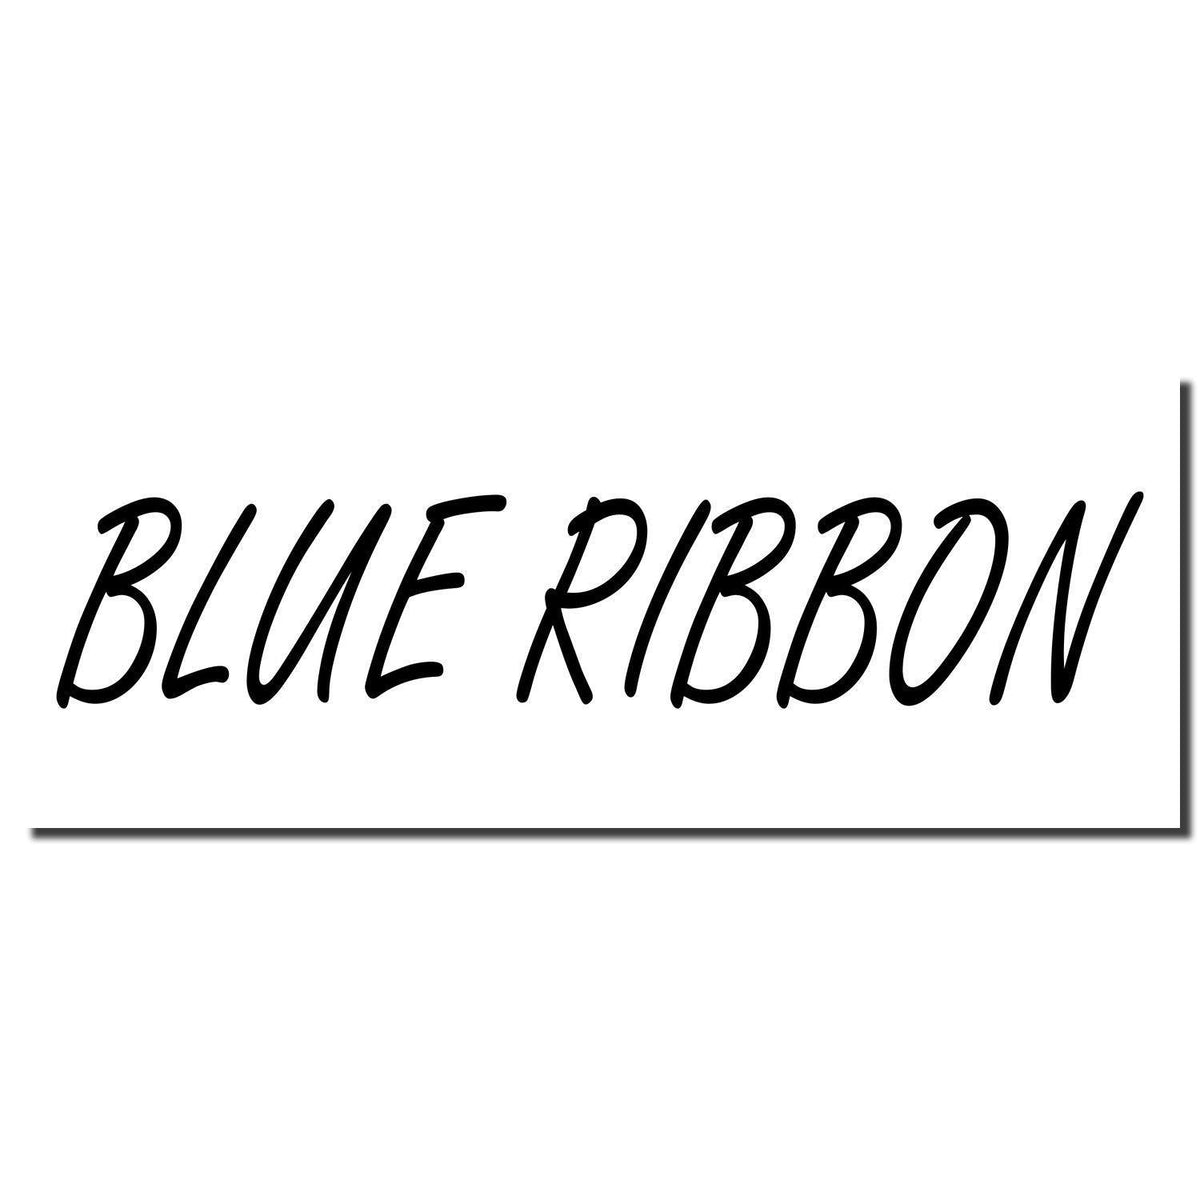 Enlarged Imprint Blue Ribbon Rubber Stamp Sample